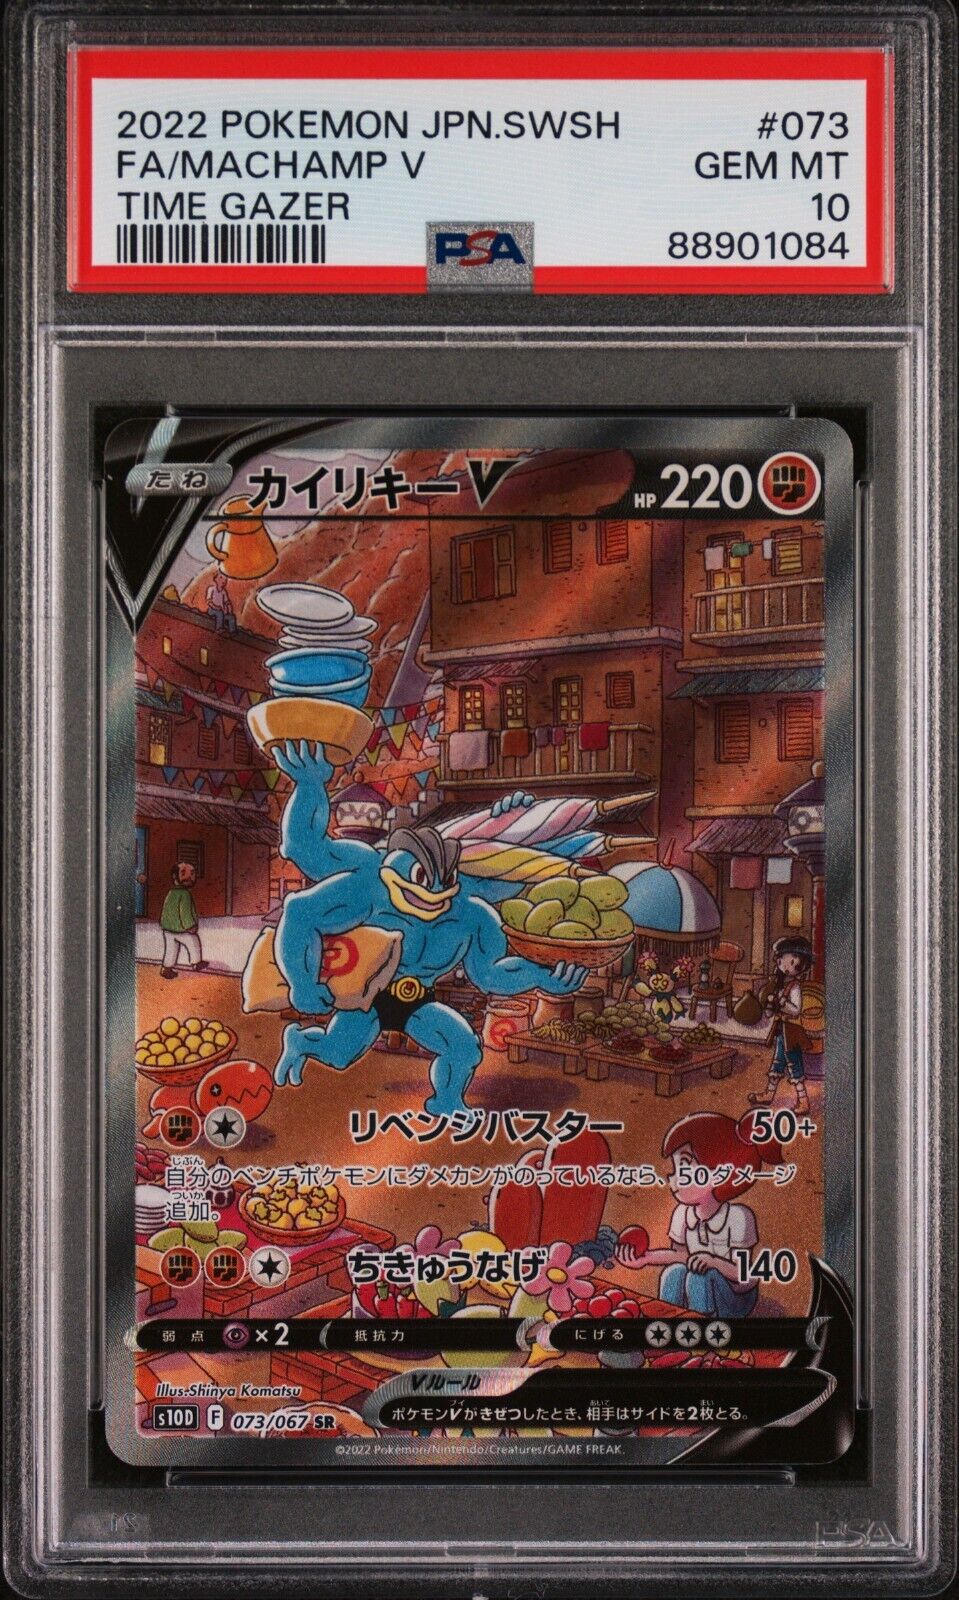 PSA 10 Machamp V Full Art 2022 Pokemon Card 073/067 Time Gazer Japanese